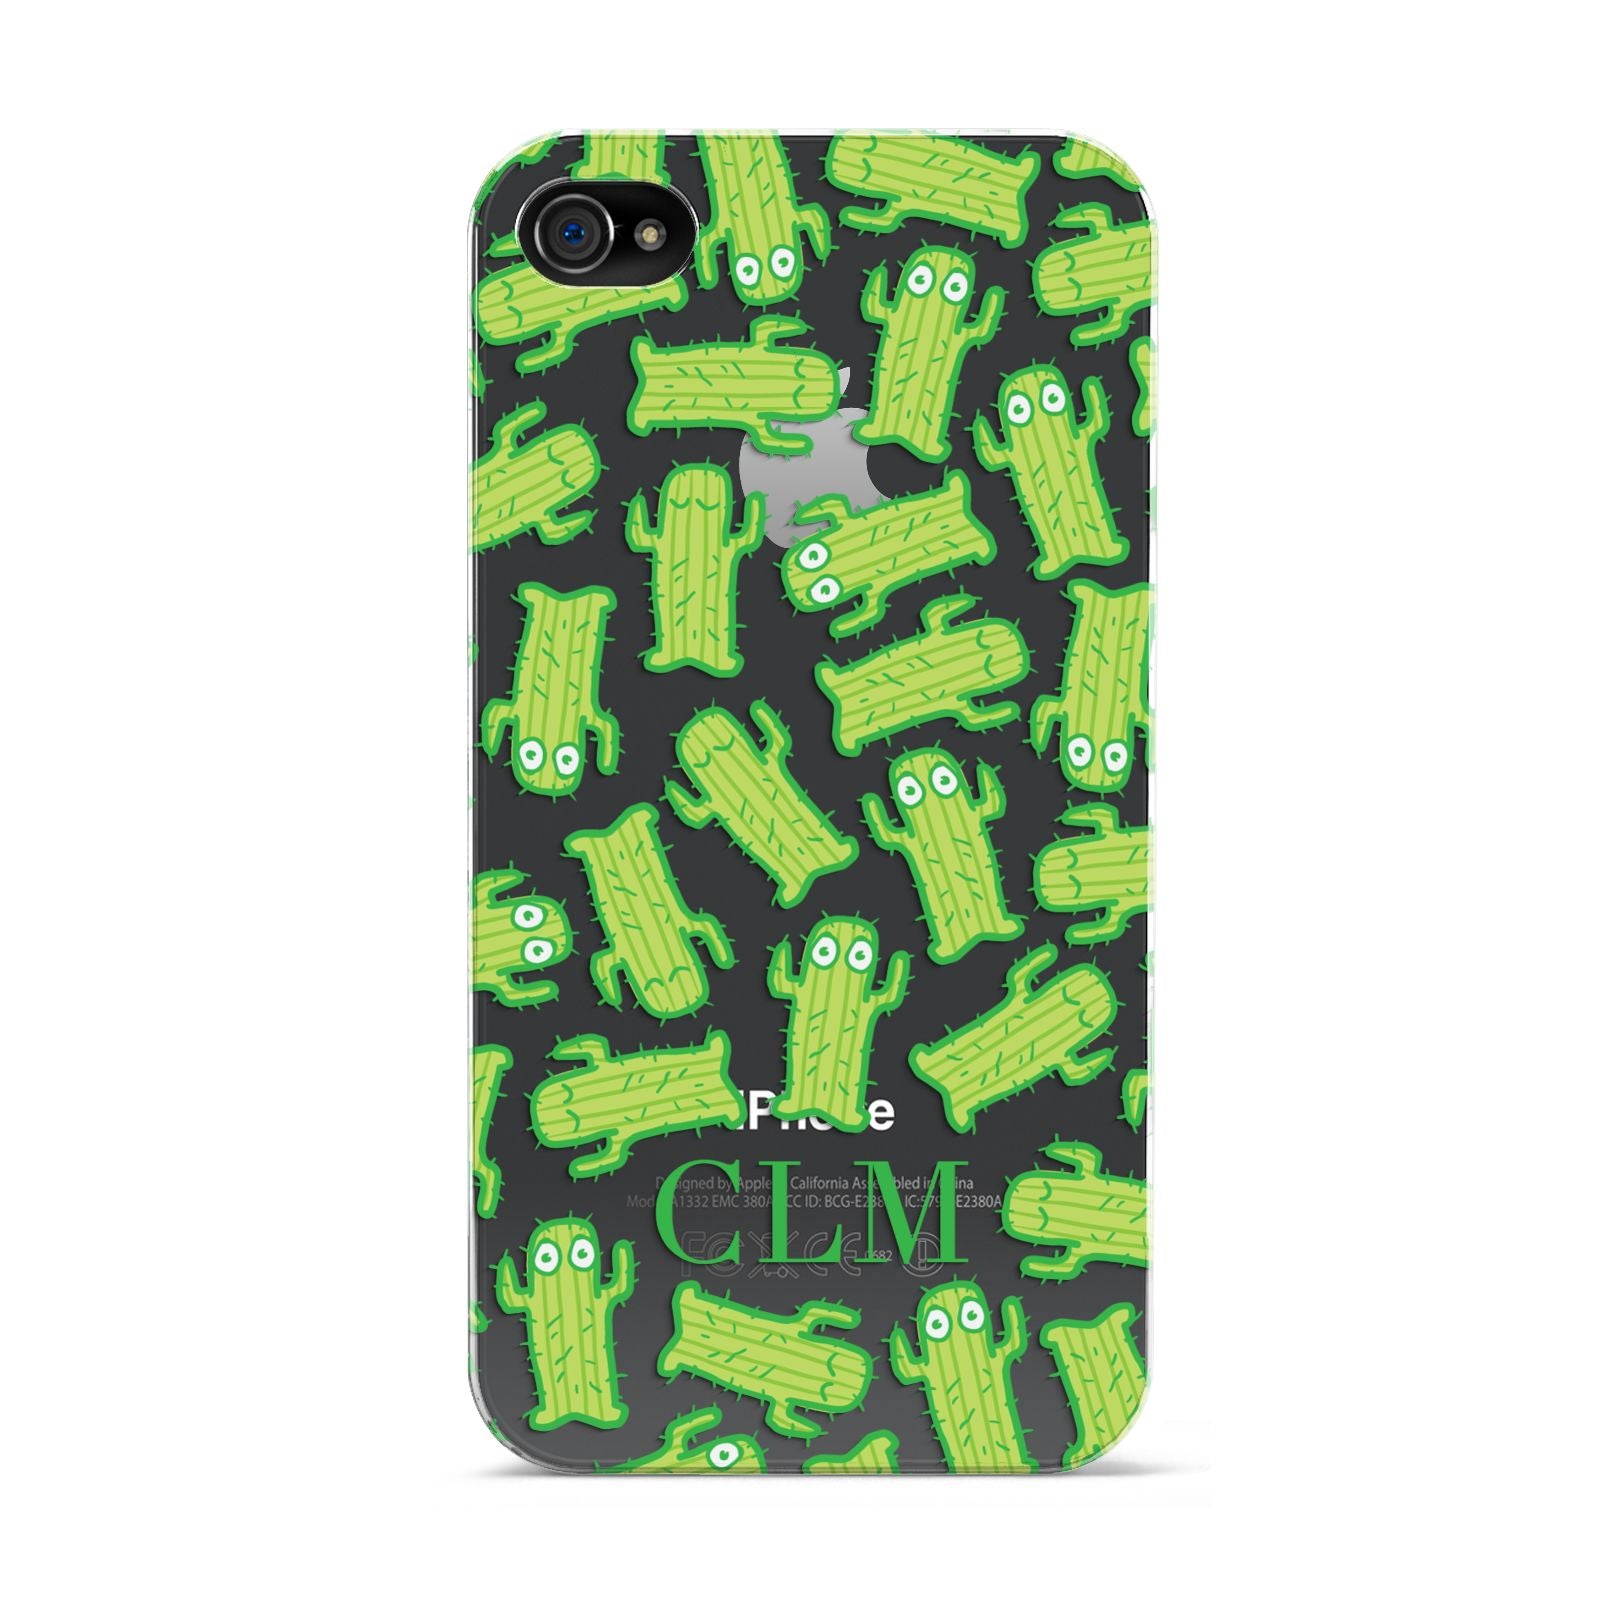 Personalised Cactus Initials Apple iPhone 4s Case